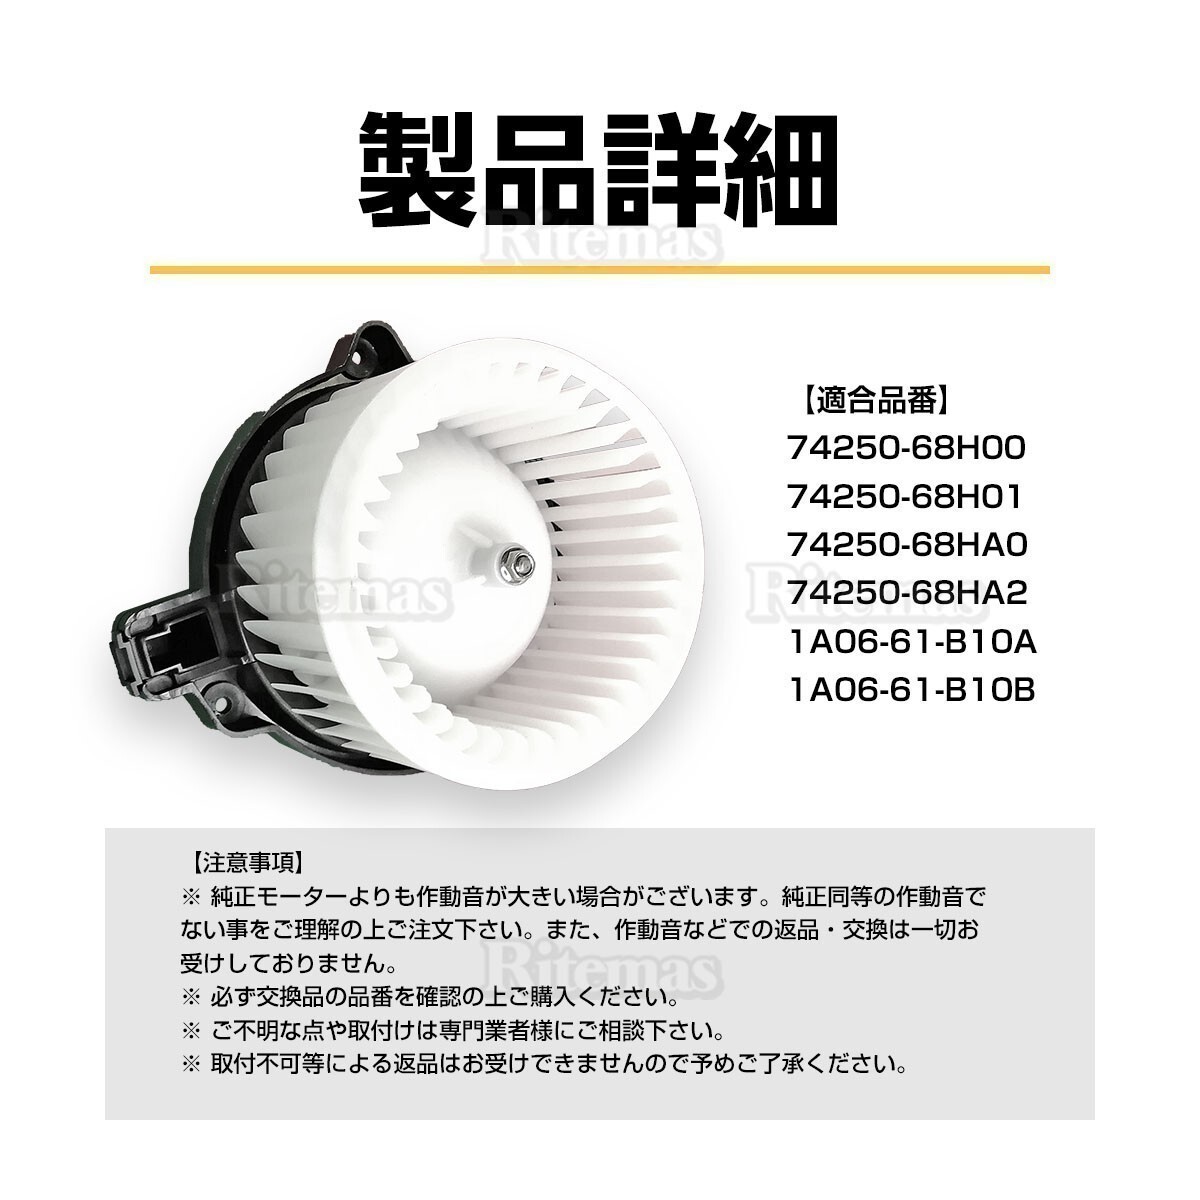  двигатель-вентилятор вентилятор Every / Every DA64V/DA64W 74250-68H00 обогреватель motor вентилятор motor вентилятор вентилятор вентилятор вентилятор 